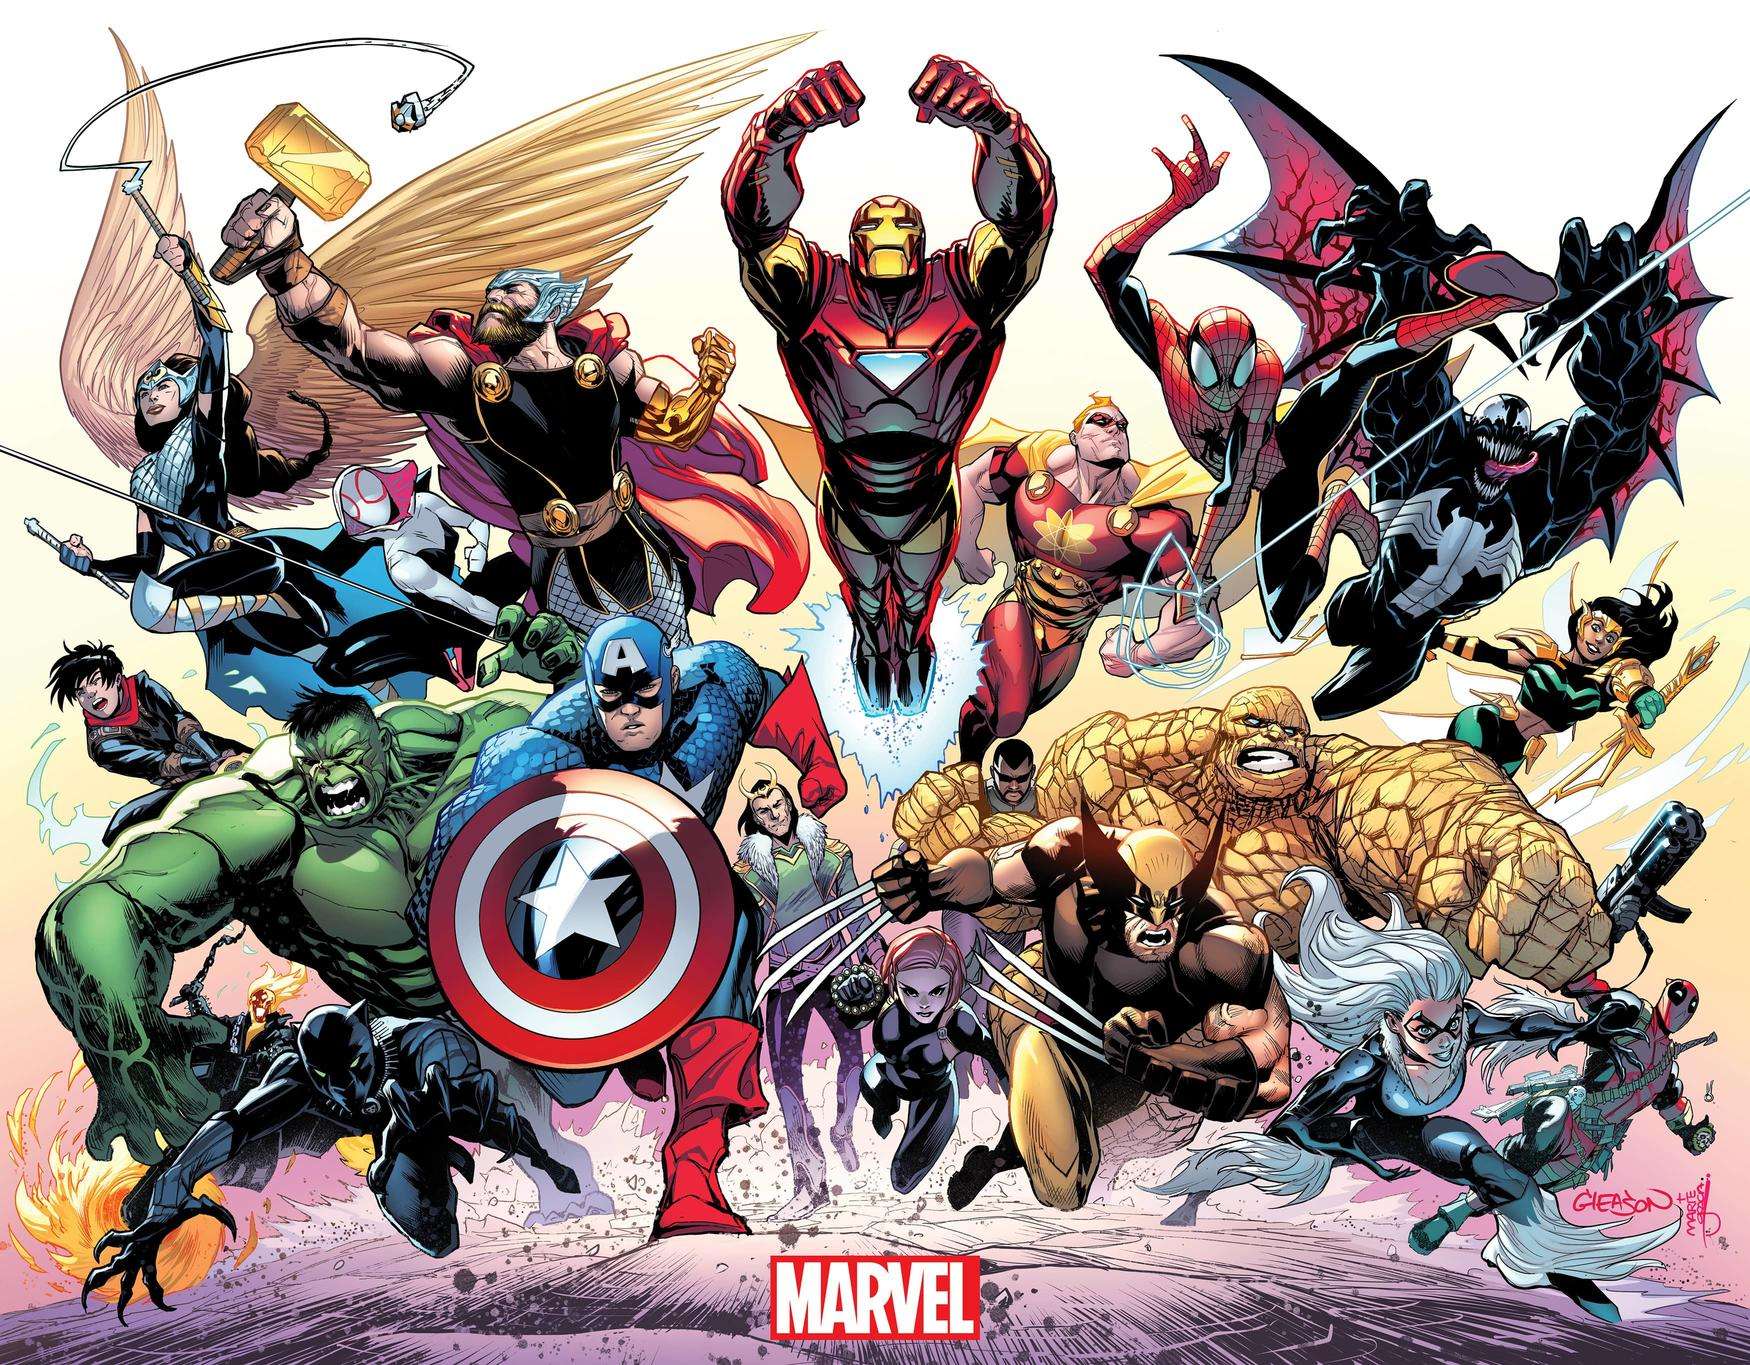 10-Marvel-Comic-books-for-beginners.jpg